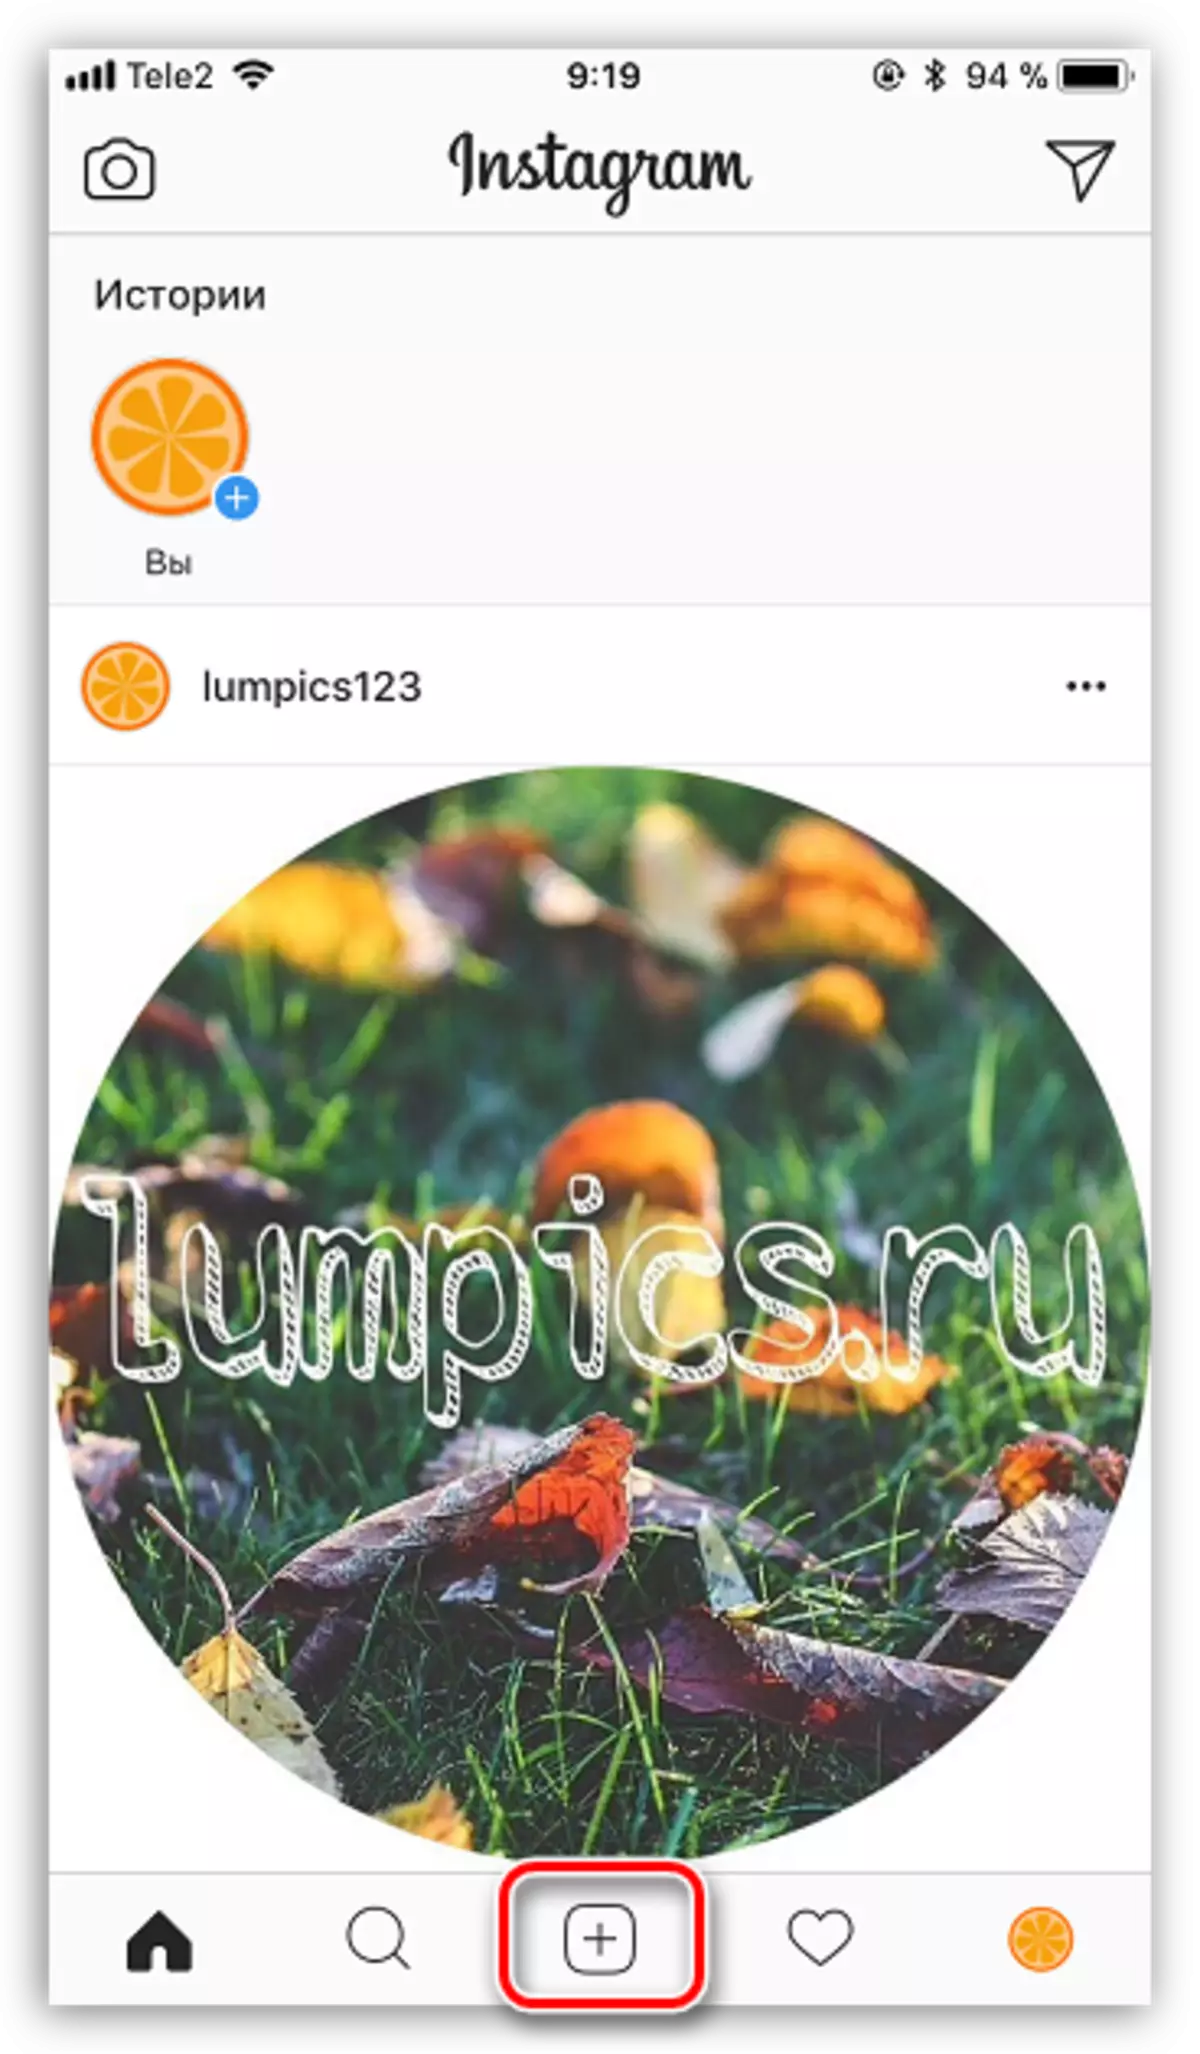 Ang button sa Central Menu sa Appleax sa Instagram